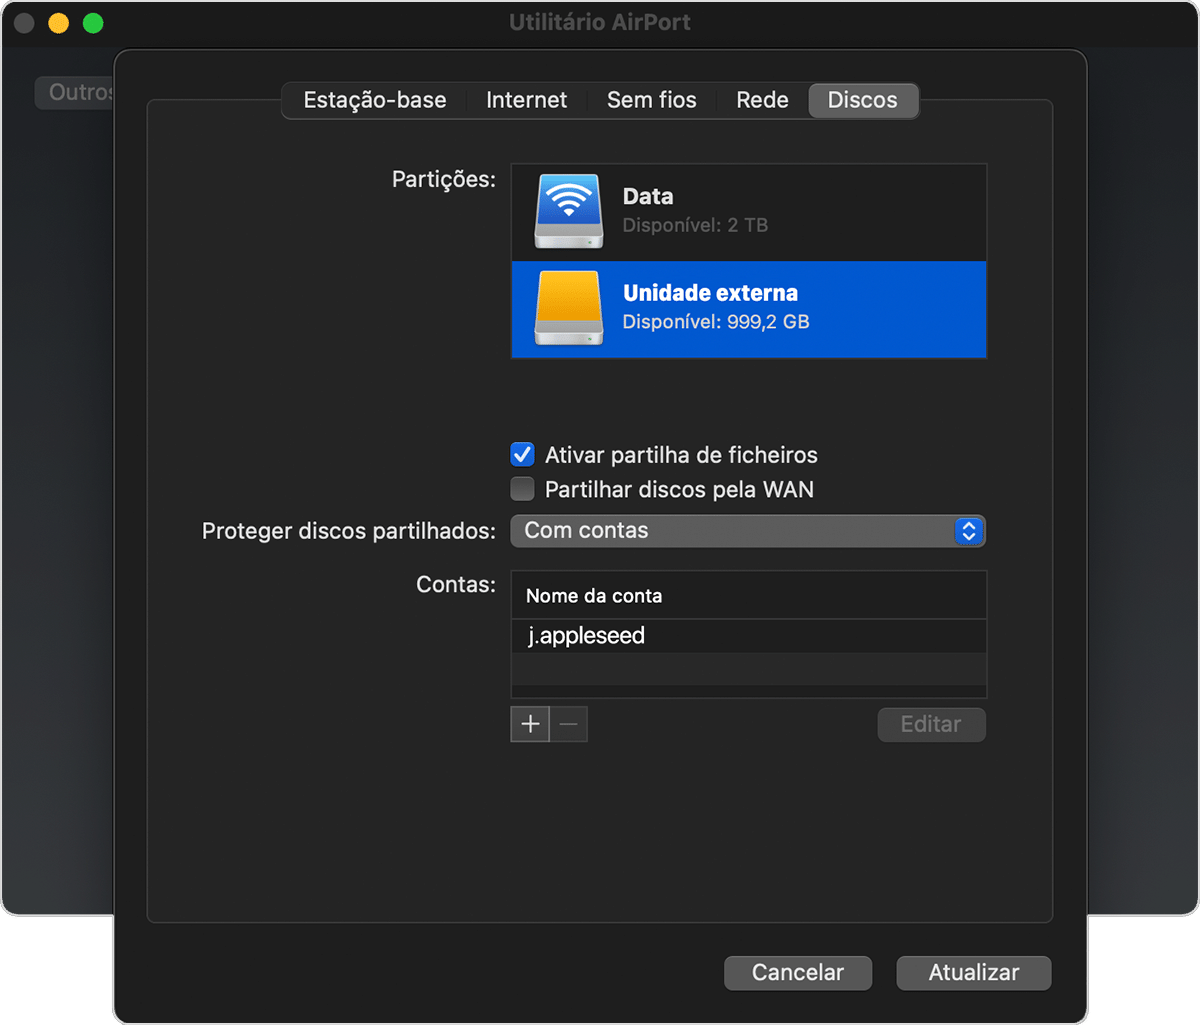 separador Discos da janela do Utilitário AirPort com a opção "Ativar partilha de ficheiros" ativada